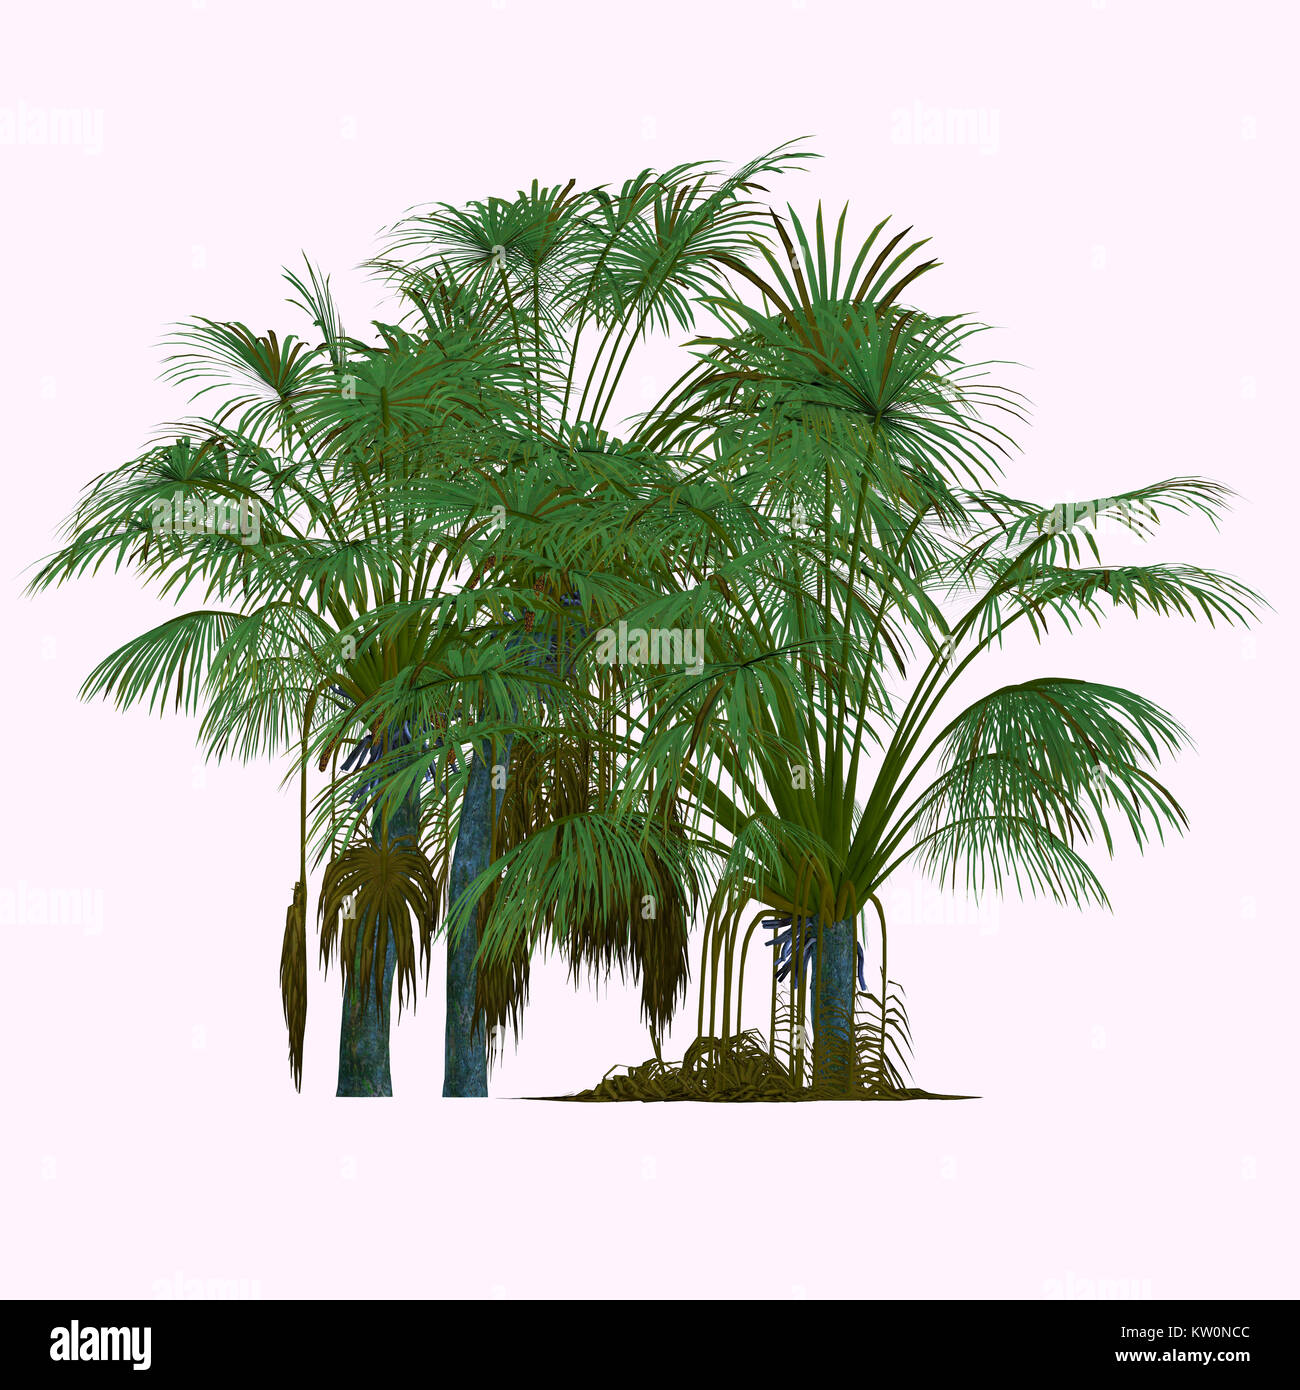 Coco de Mer Bäume - Hierbei handelt es sich um eine Palm endemisch auf die Inseln Praslin und Curieuse auf den Seychellen und ist das einzige Mitglied der Gattung Laodizea. Stockfoto